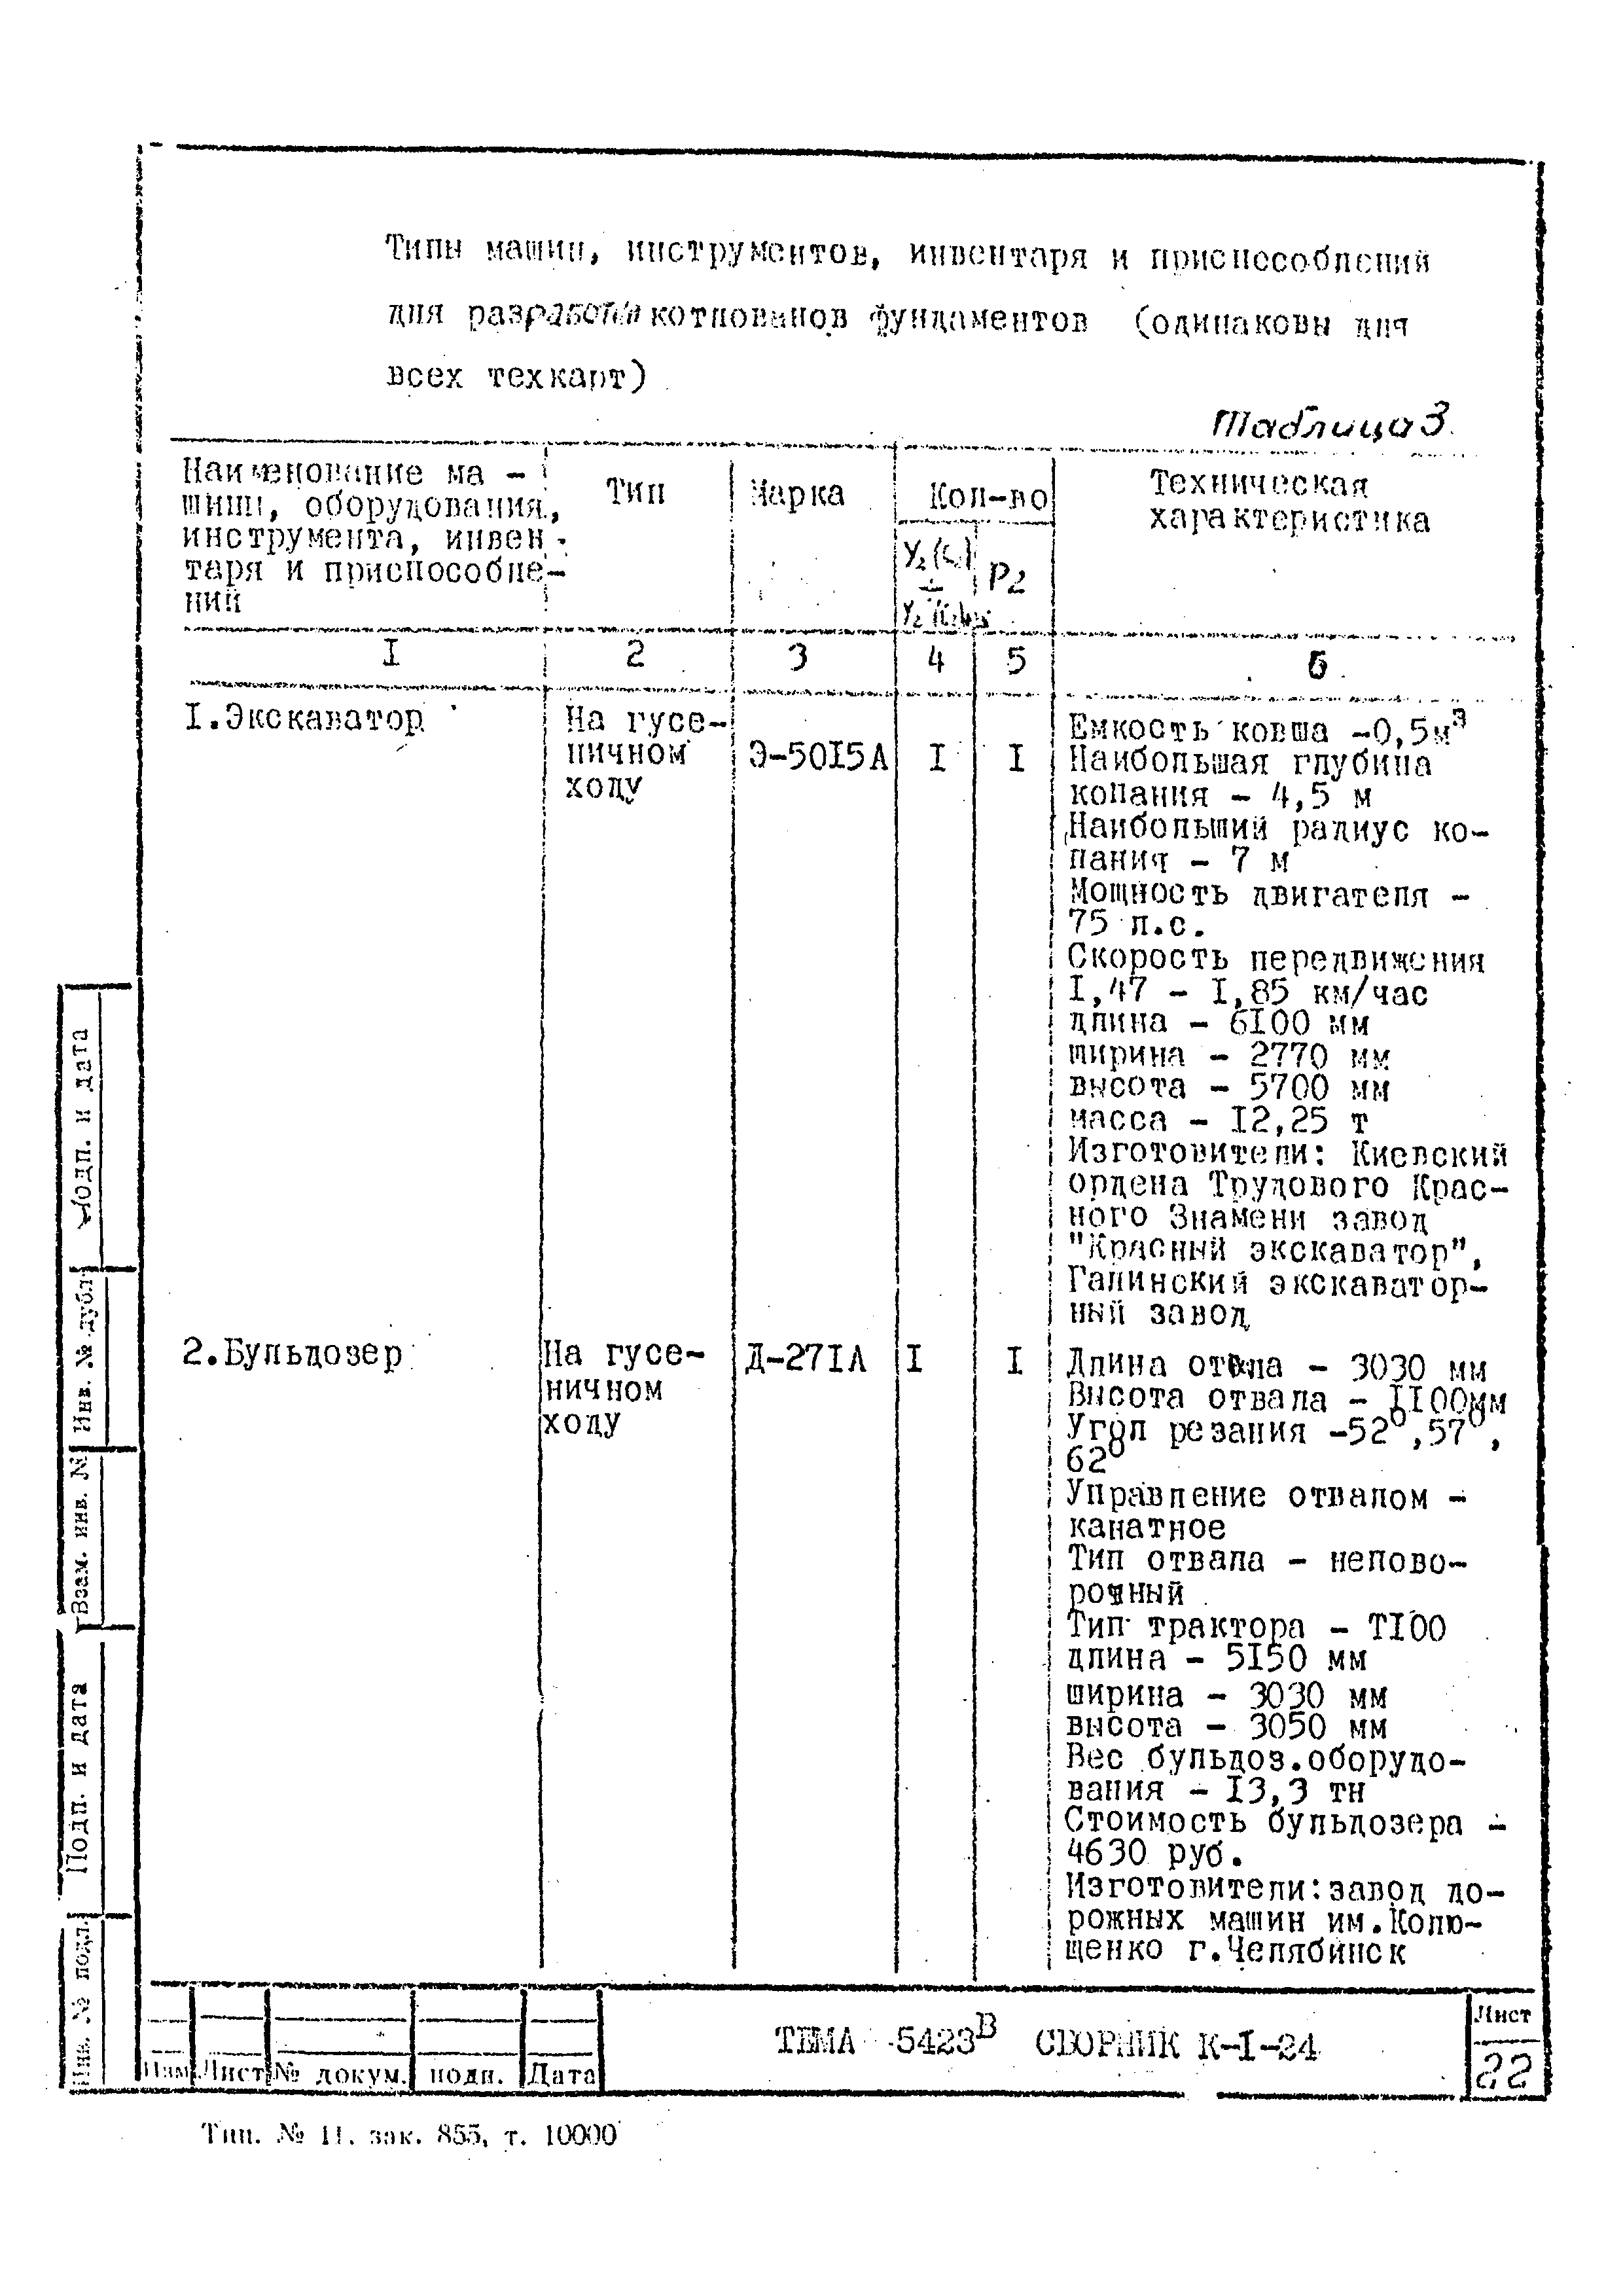 Технологическая карта К-1-24-6